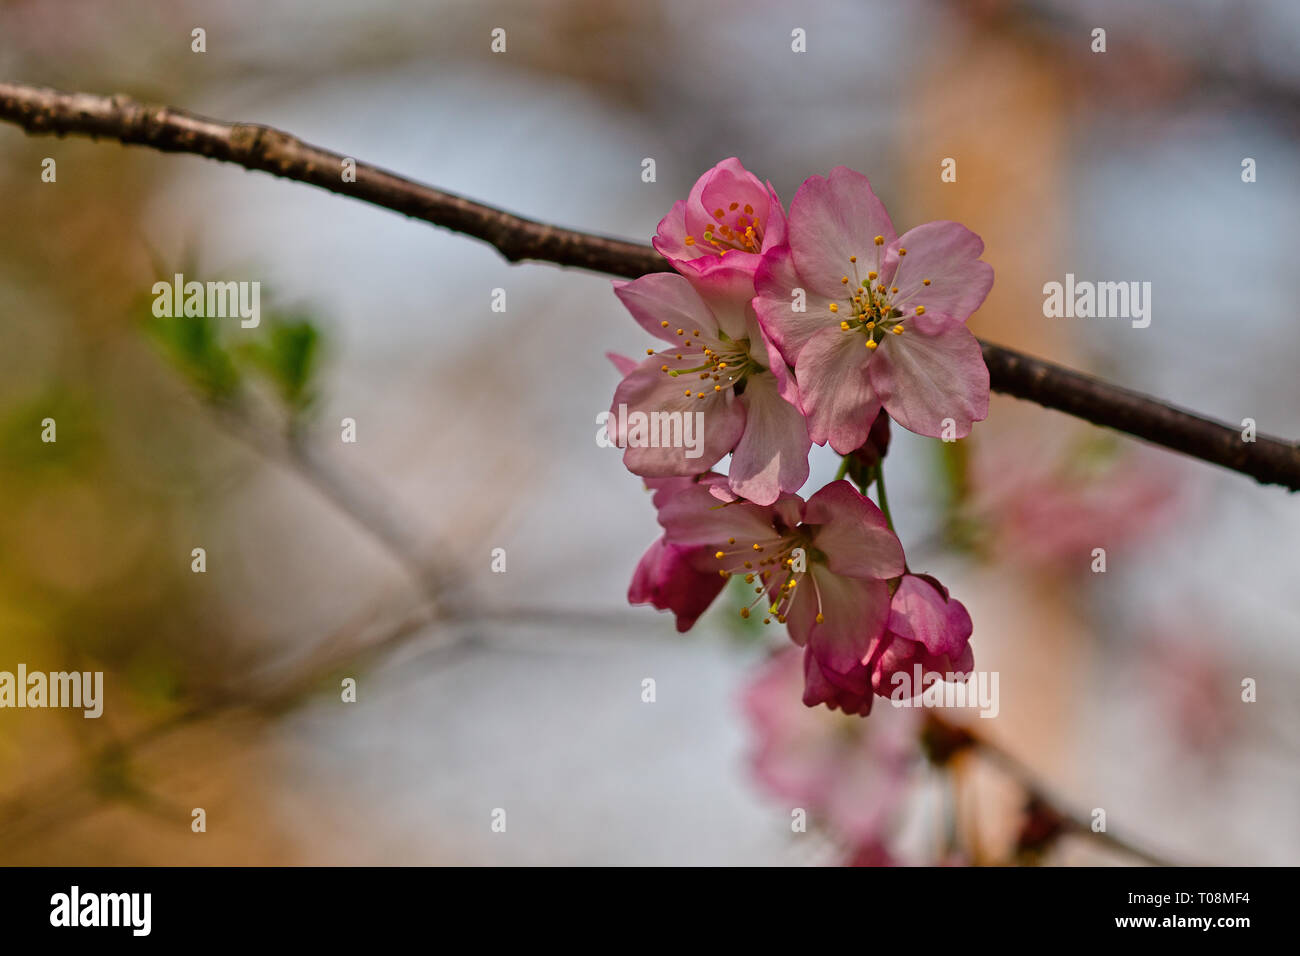 Sakura fleurs ou fleurs de cerisiers japonais au printemps. Symboles de la pureté, de la résurrection, de la vie et de la beauté. Peut être utilisé comme fond floral naturel. Spa Banque D'Images